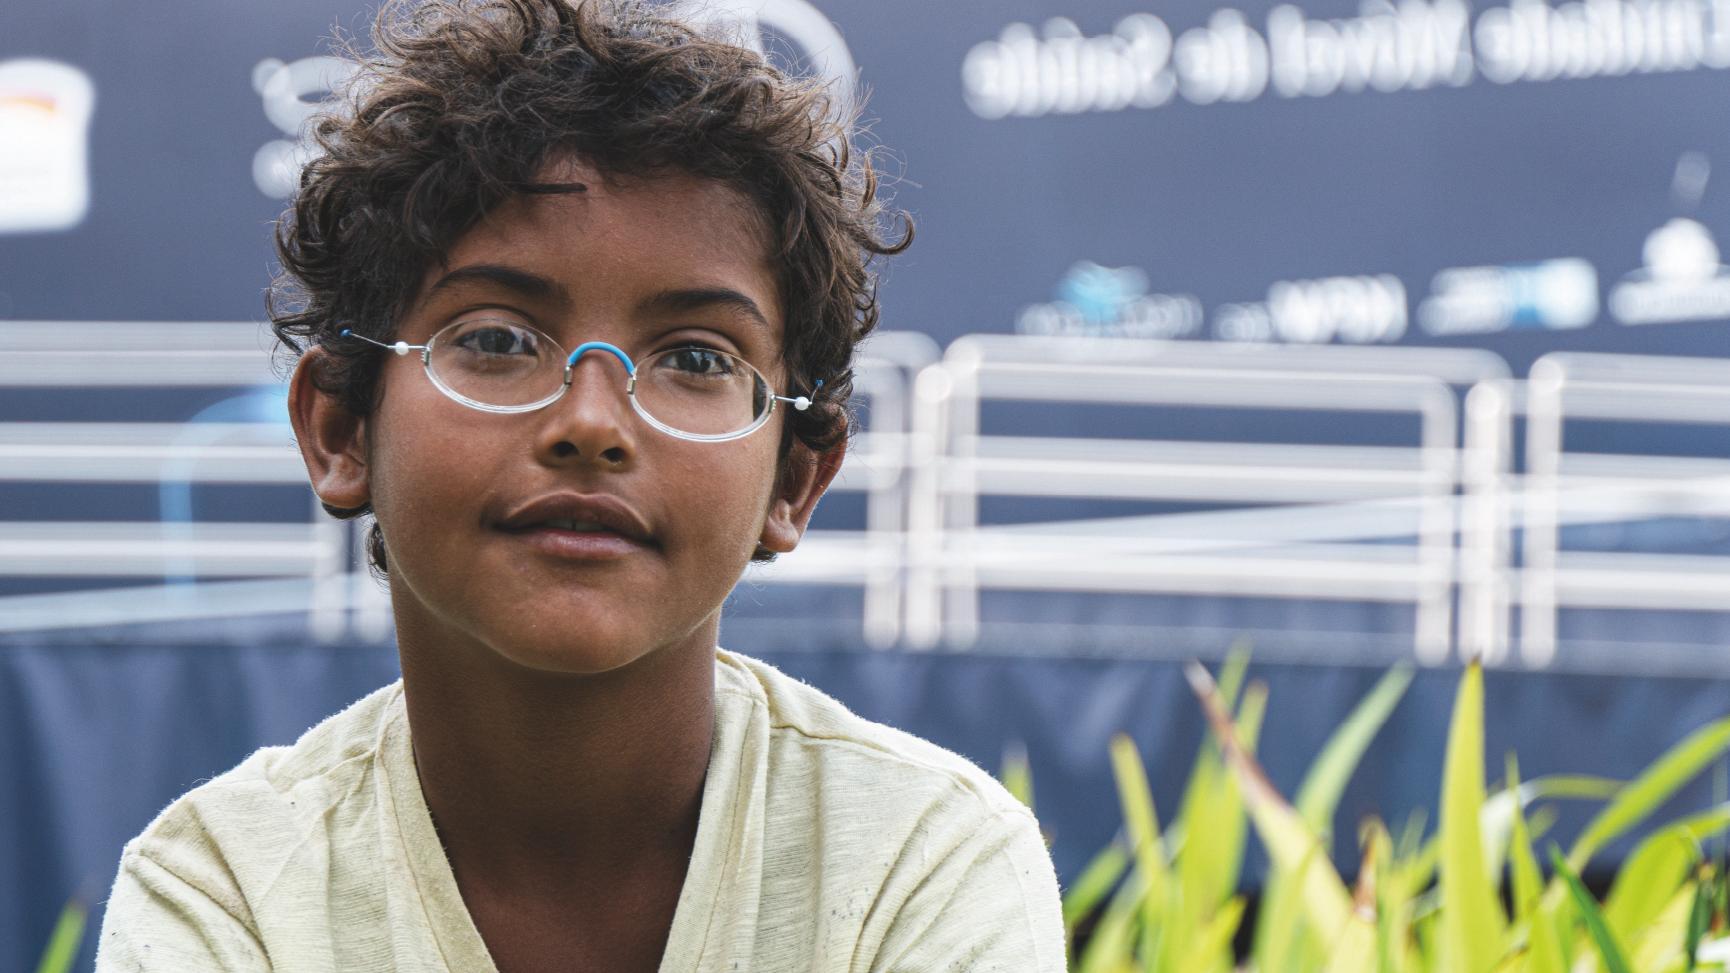 Brasilianischer Junge mit Brille vor blauem LKW